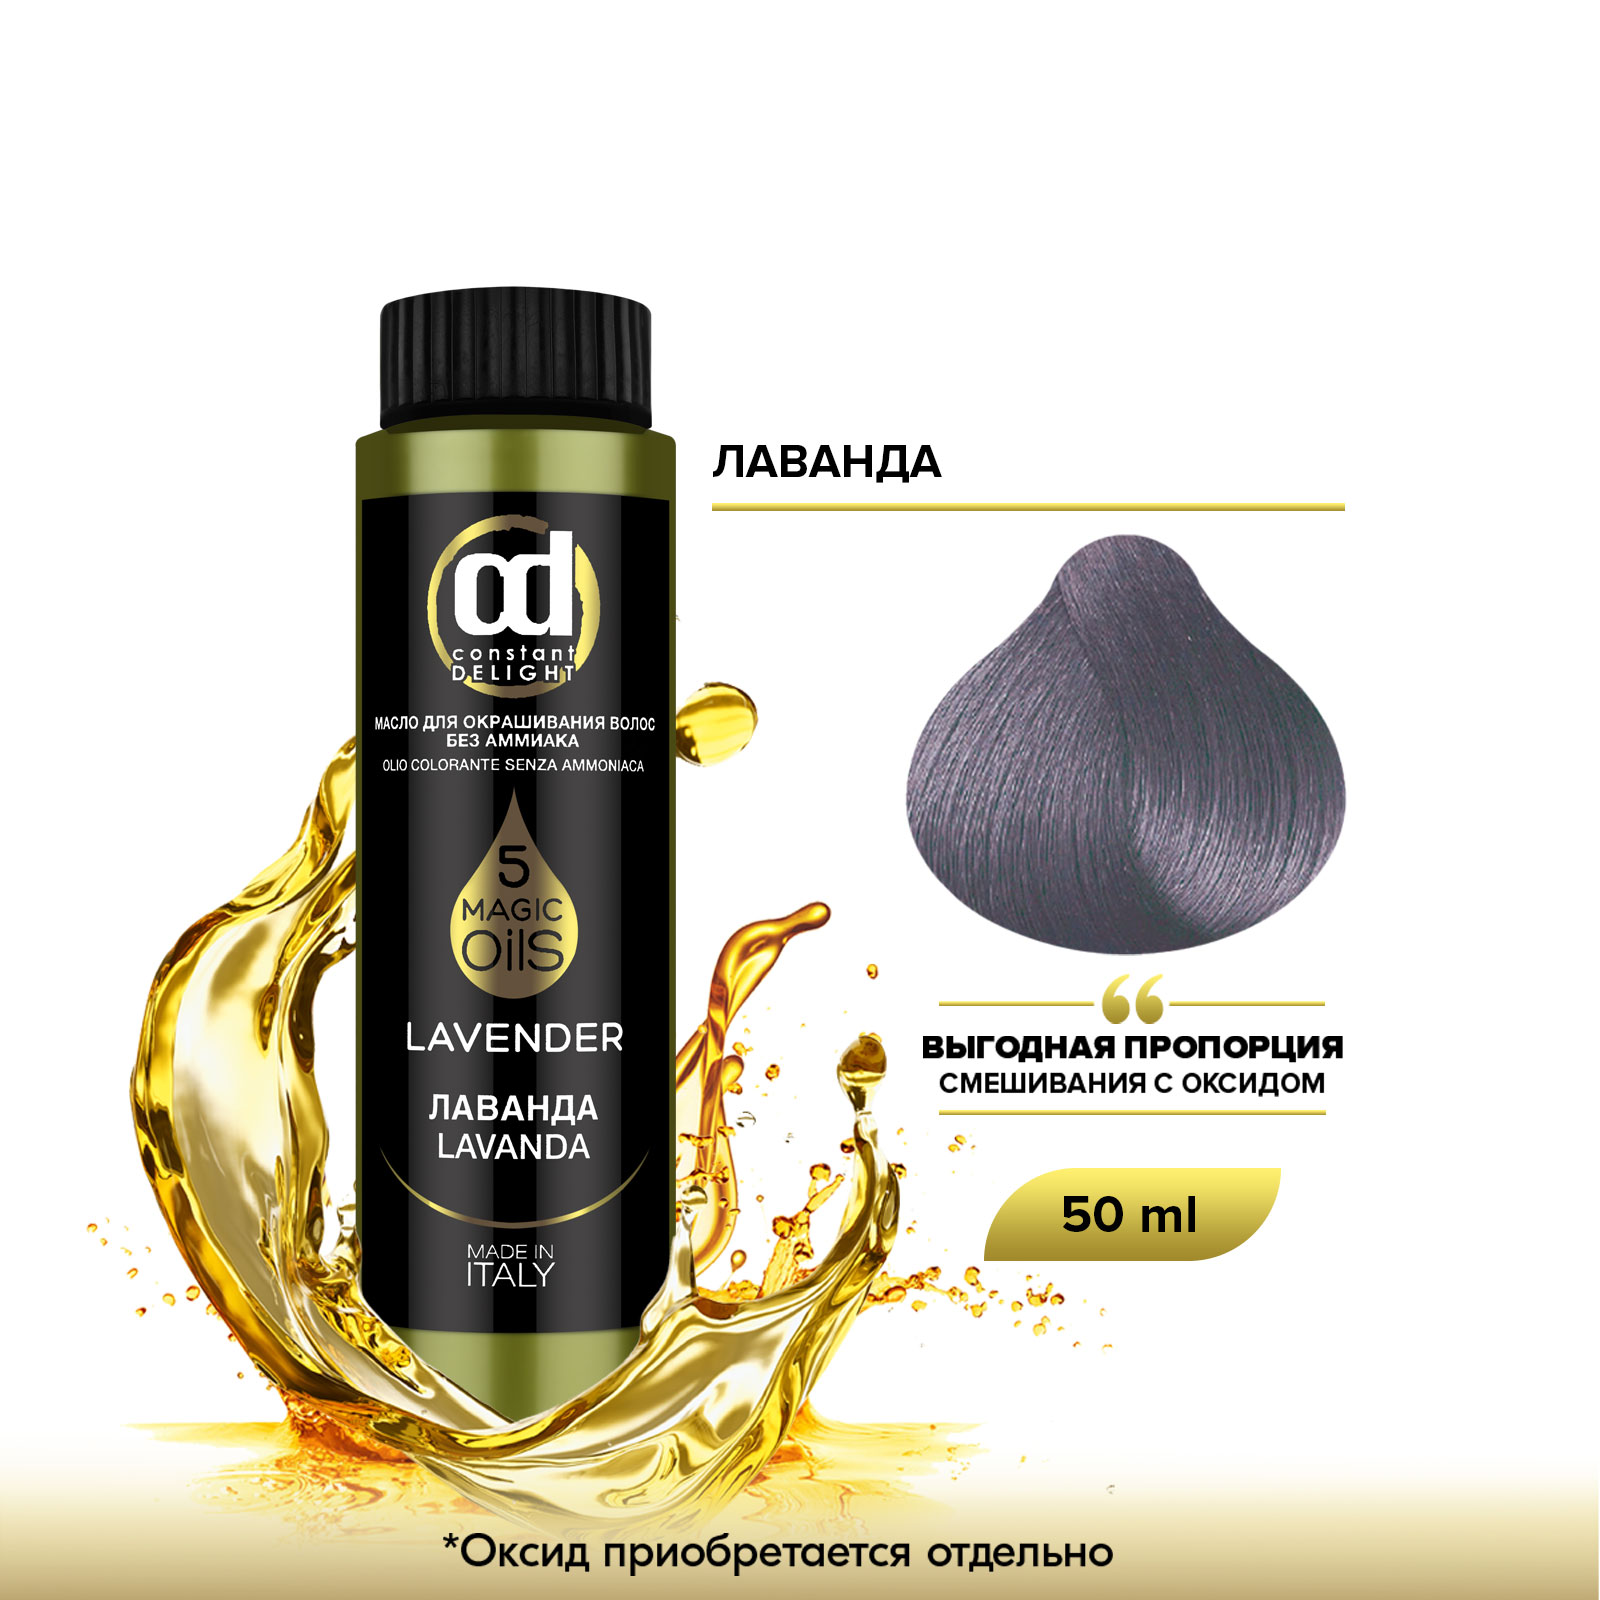 Масло Constant Delight Magic 5 Oils для окрашивания волос лаванда 50 мл dominal очное масло для тела лаванда 50